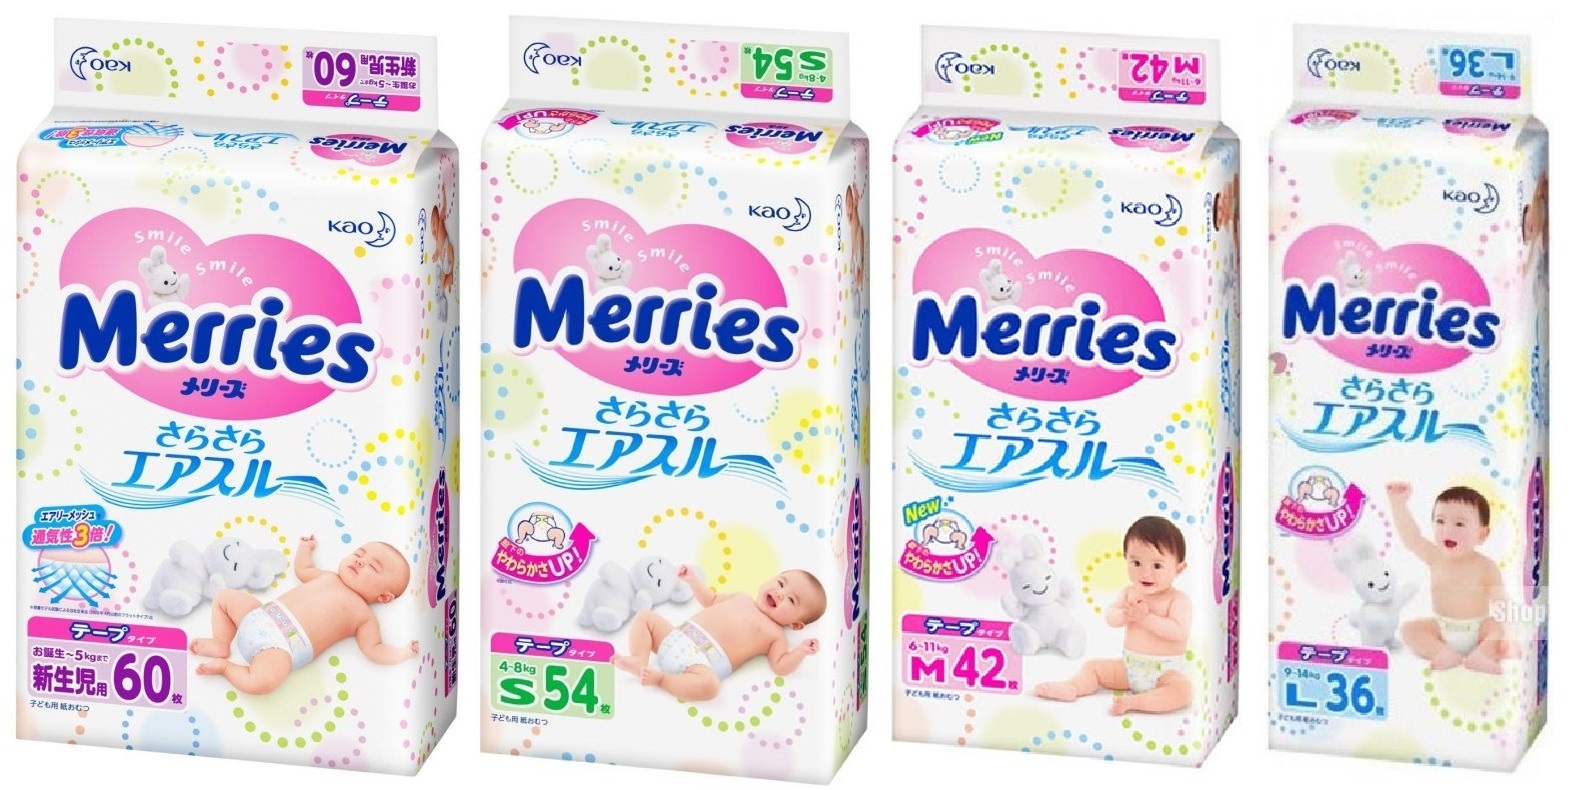 Bỉm Merries có tốt không? Có nên sử dụng bỉm Merries cho bé? | websosanh.vn